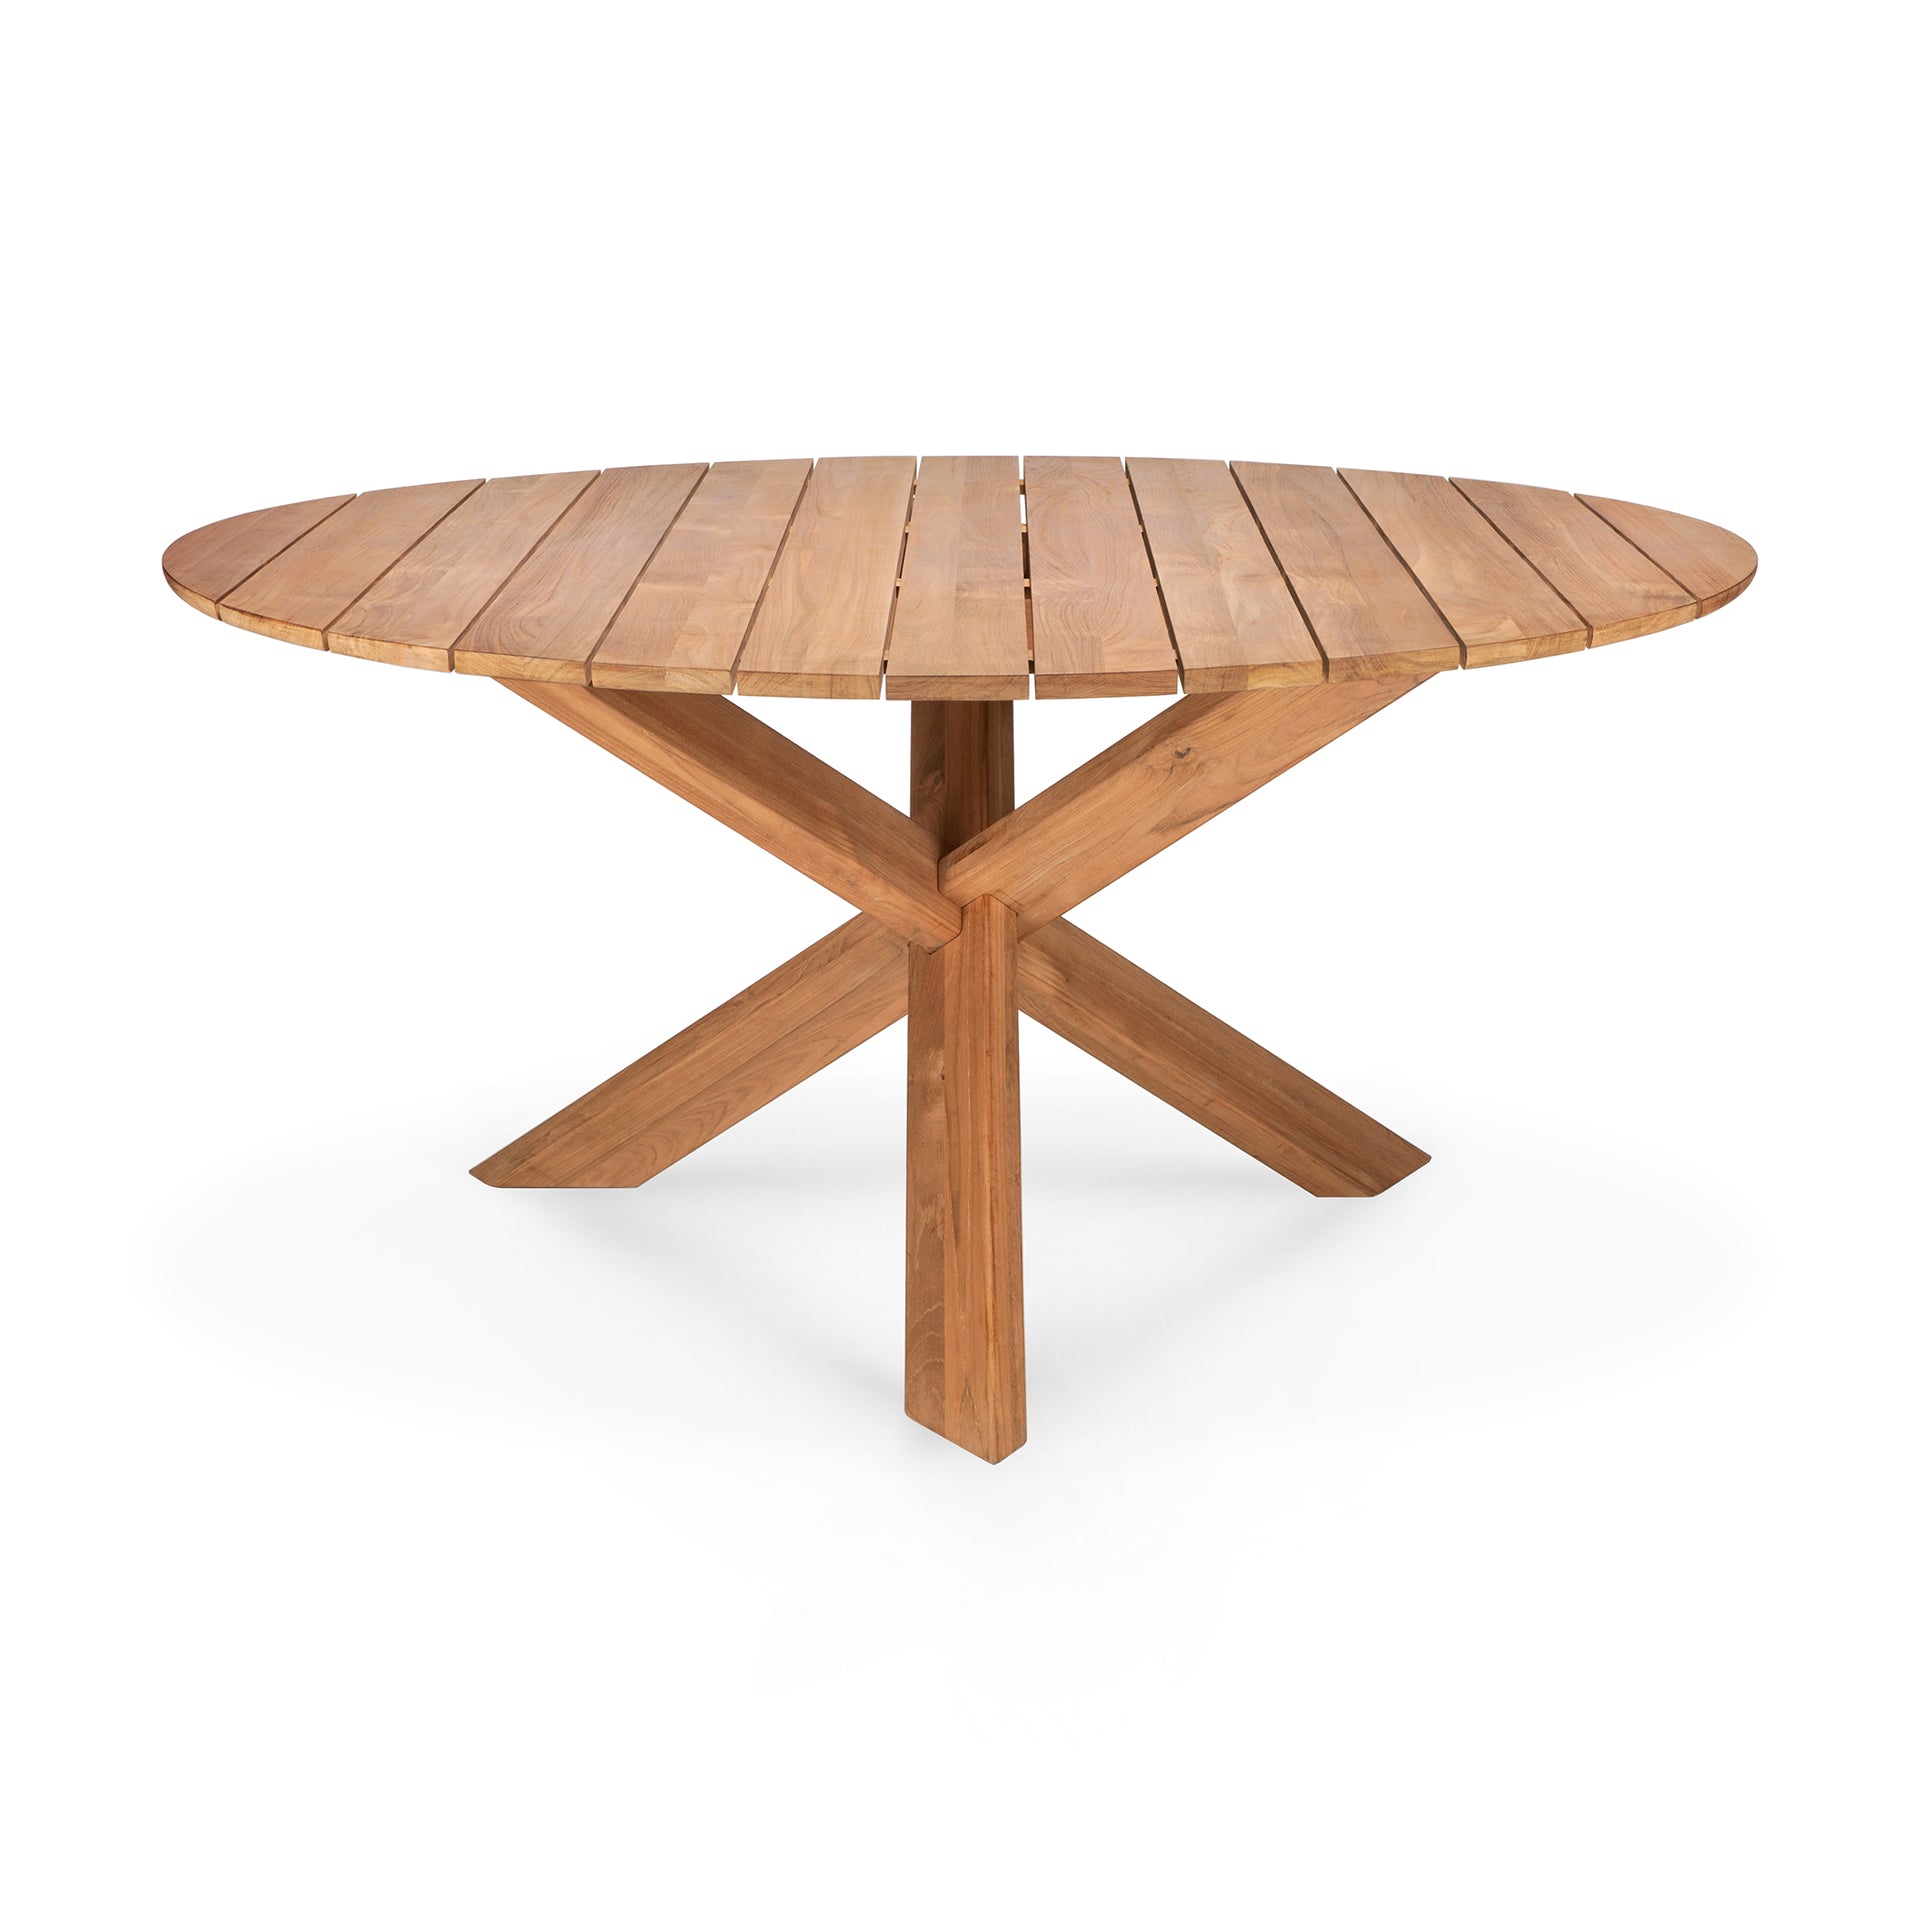 比利時原裝進口實木傢俬 - 戶外系列 - Circle系列柚木圓形餐桌